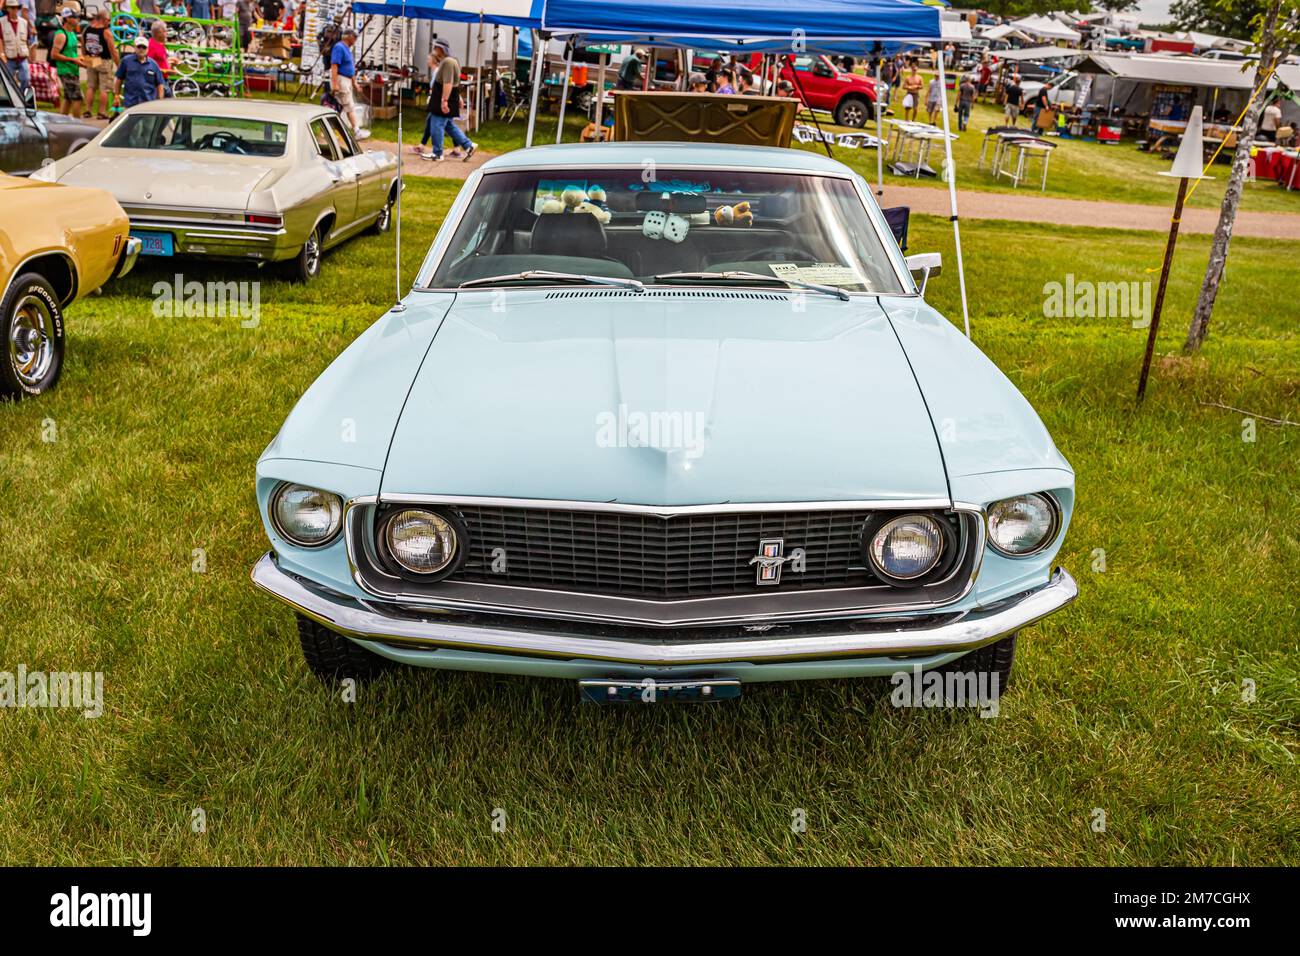 Iola, WI - 07 juillet 2022 : vue de face d'une Ford Mustang Hardtop coupé 1969 lors d'un salon de voiture local. Banque D'Images